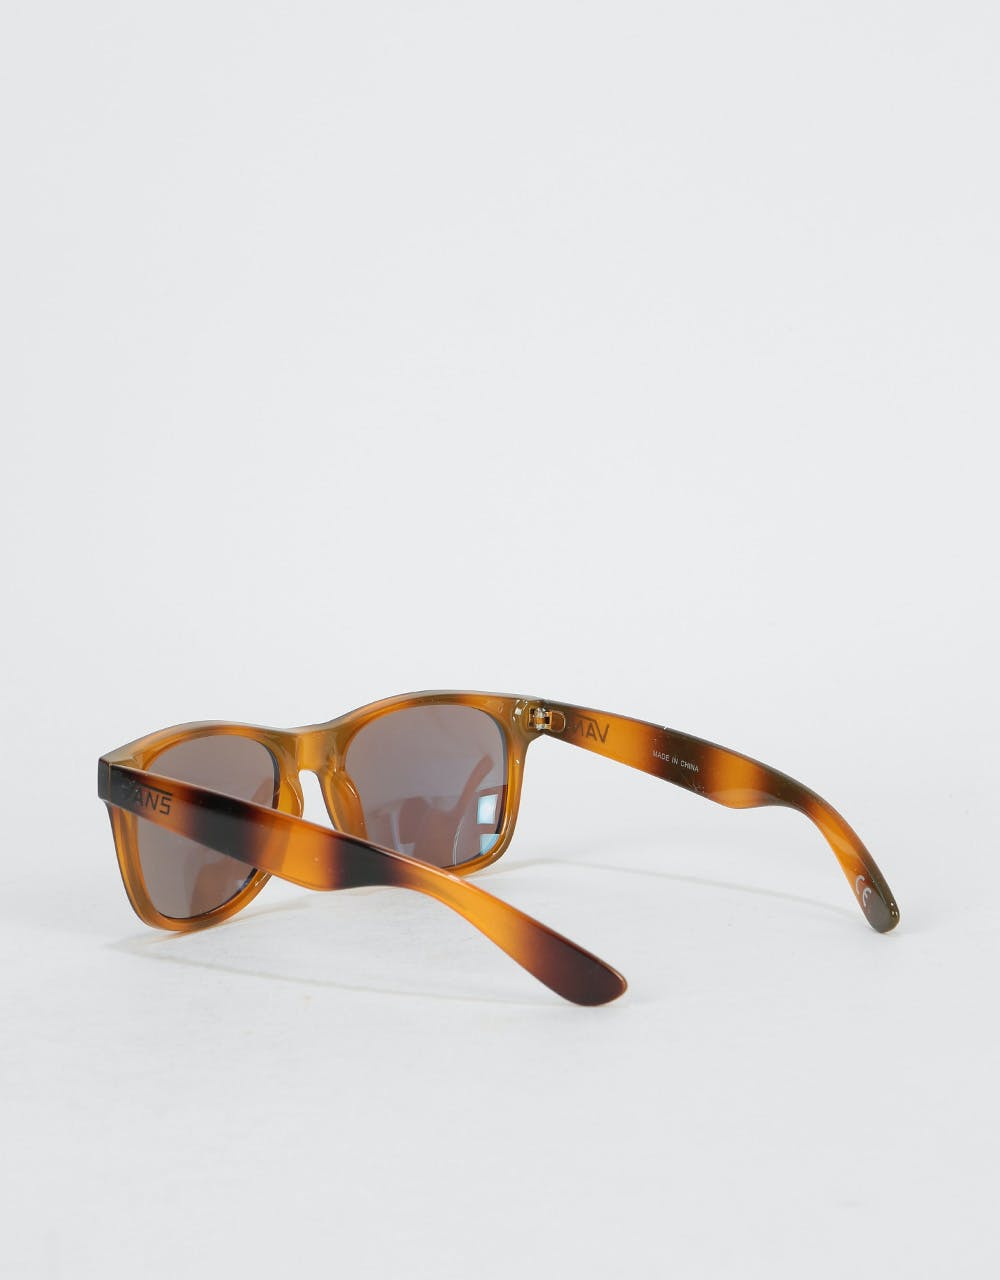 Vans Spicoli 4 Sunglasses - Tortoiseshell  (Mirrored Lens)